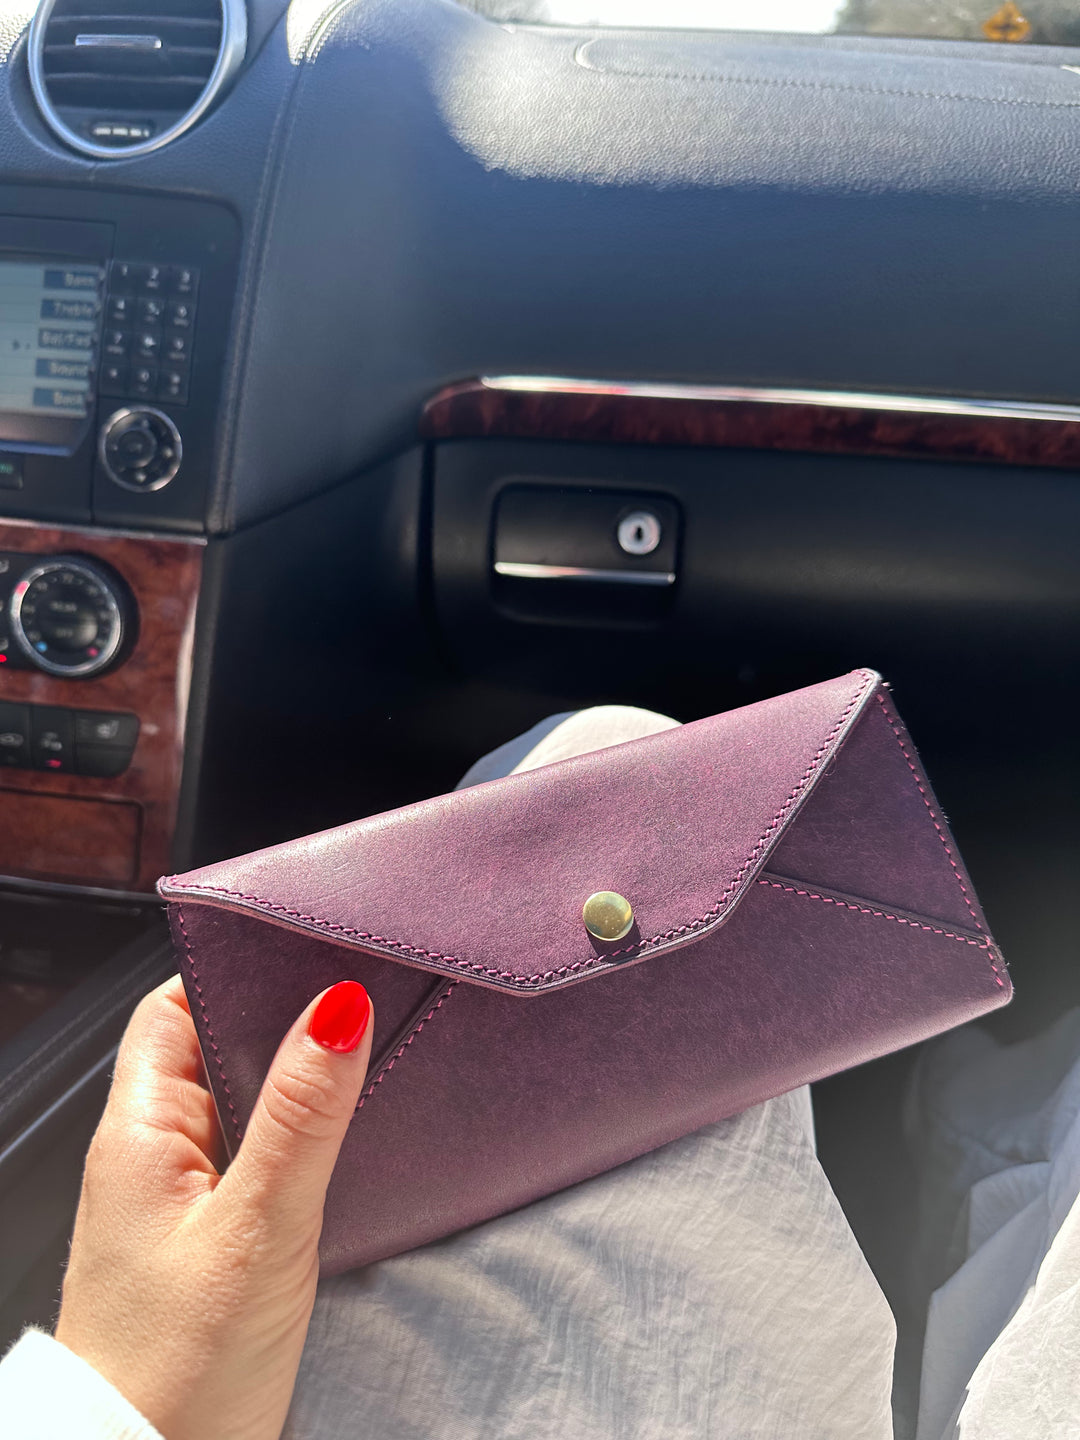 Wallet "Purple"